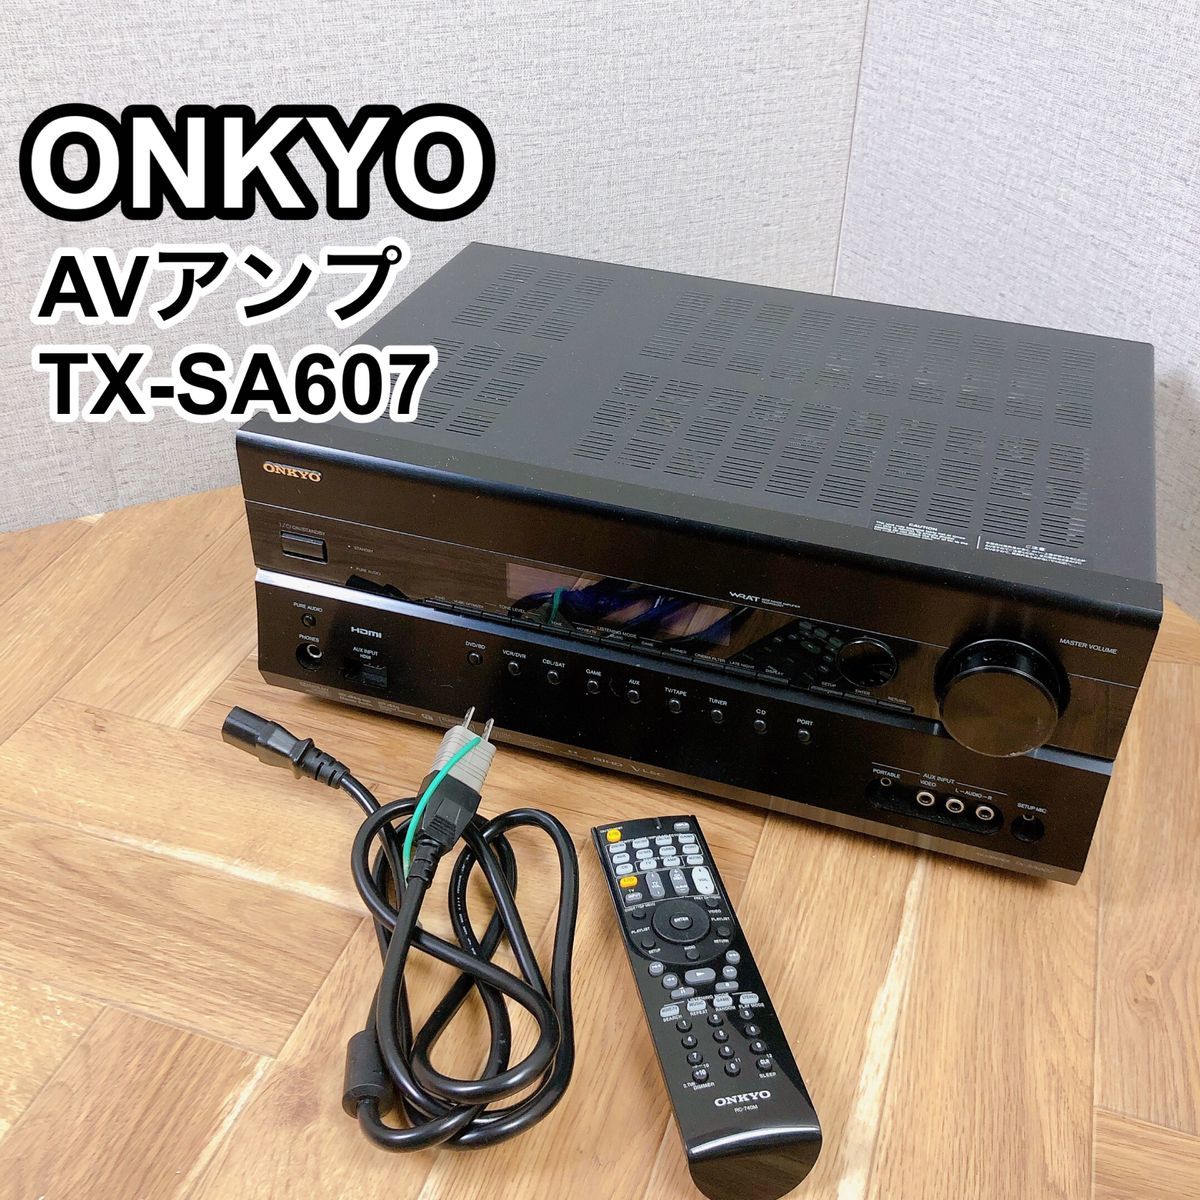 うのにもお得な ONKYO TX-SA607 AVアンプ オンキョー オンキヨー